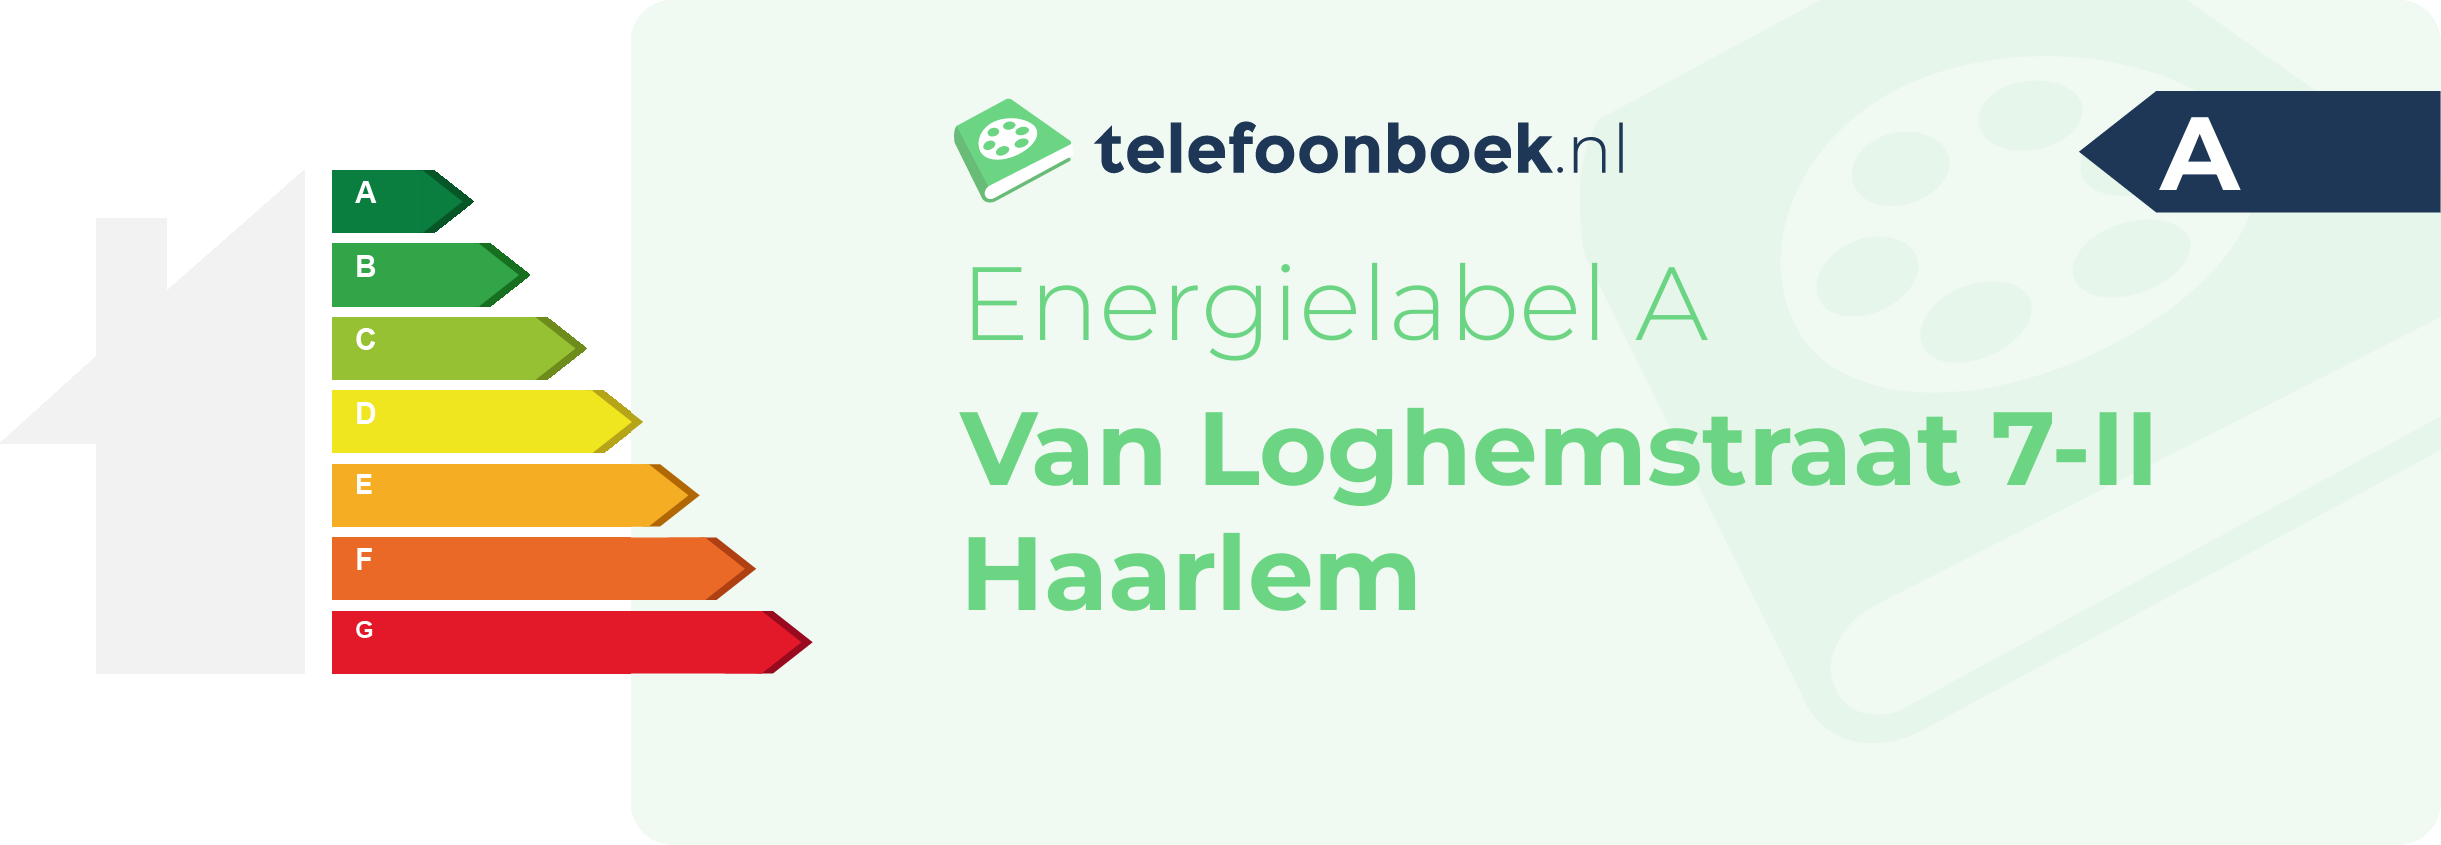 Energielabel Van Loghemstraat 7-II Haarlem